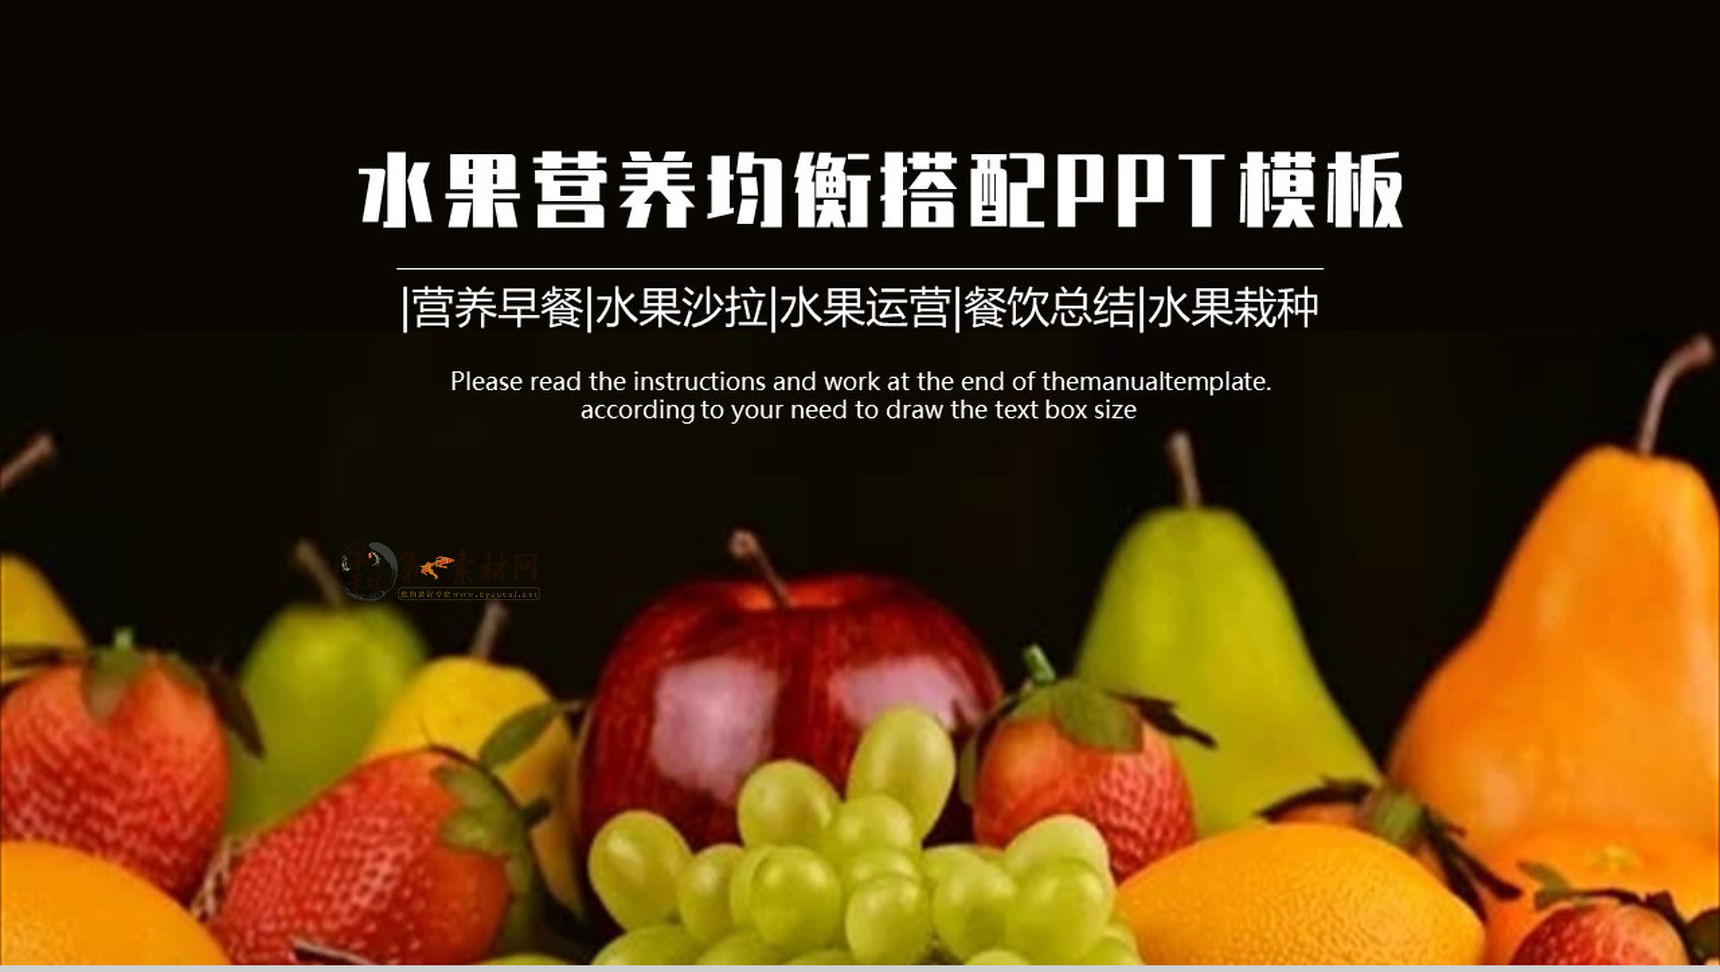 健康饮食水果果蔬营养搭配PPT模板-1